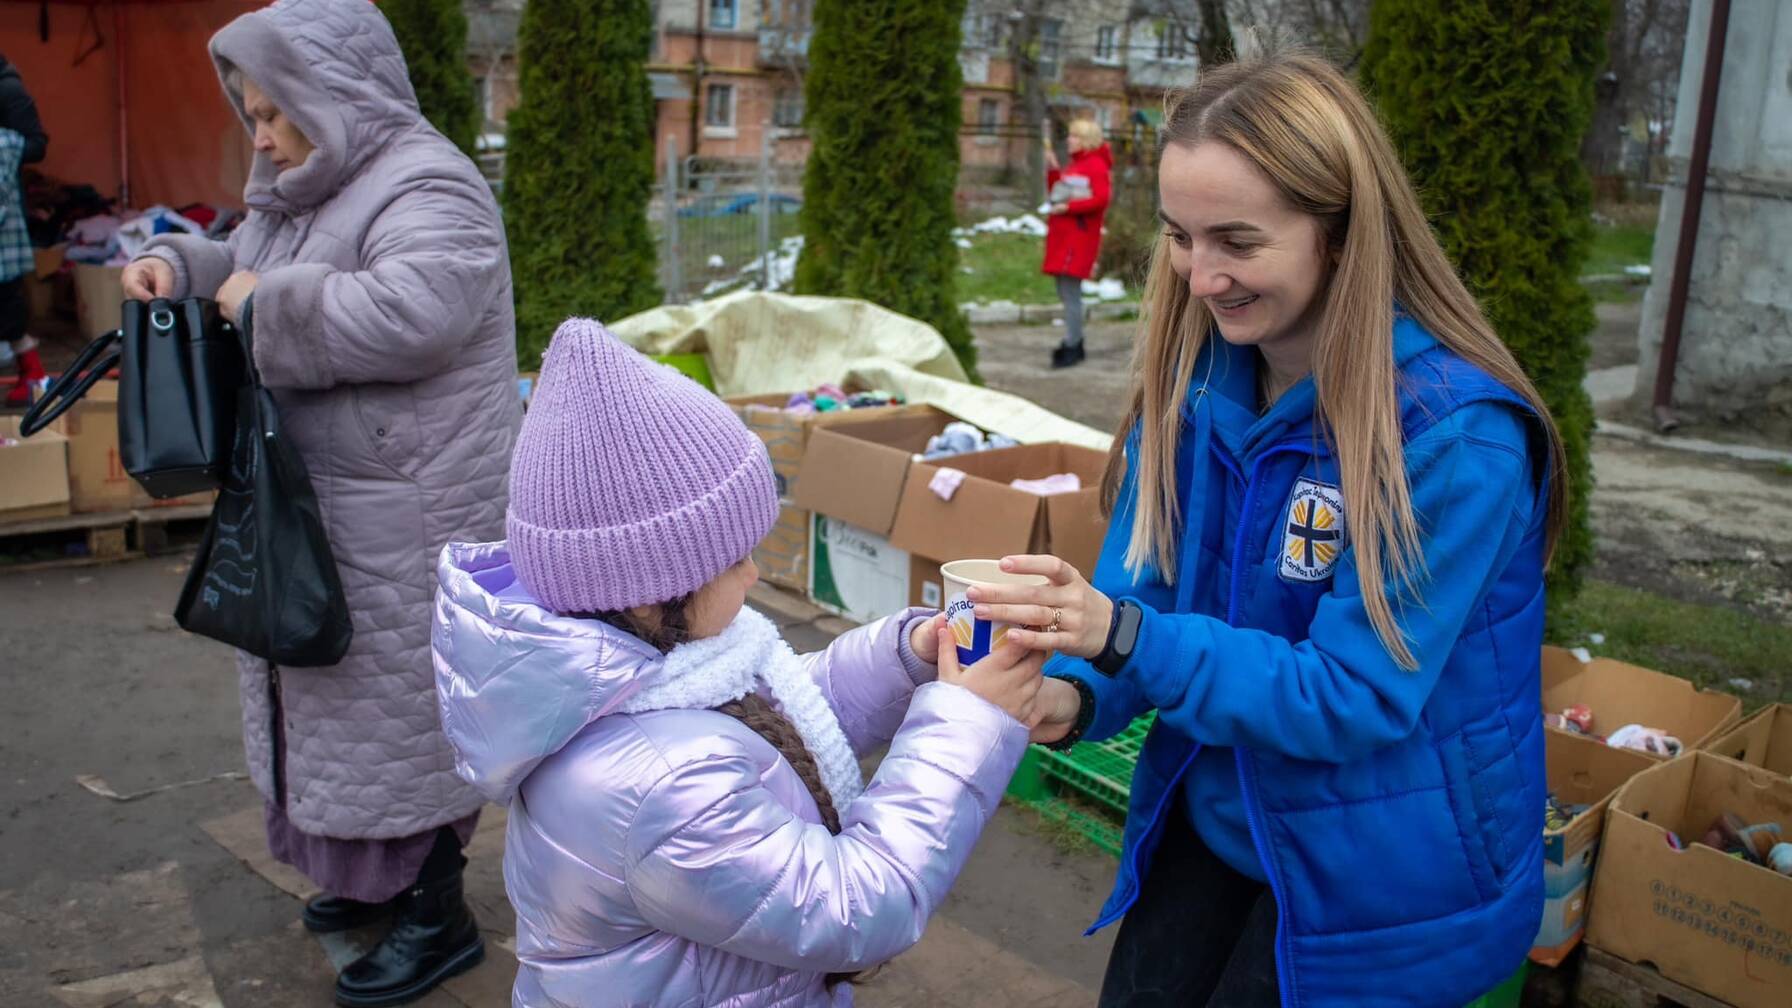 Un piccolo gesto può fare tanto: una volontaria serve del tè caldo e regala un sorriso a una bambina.